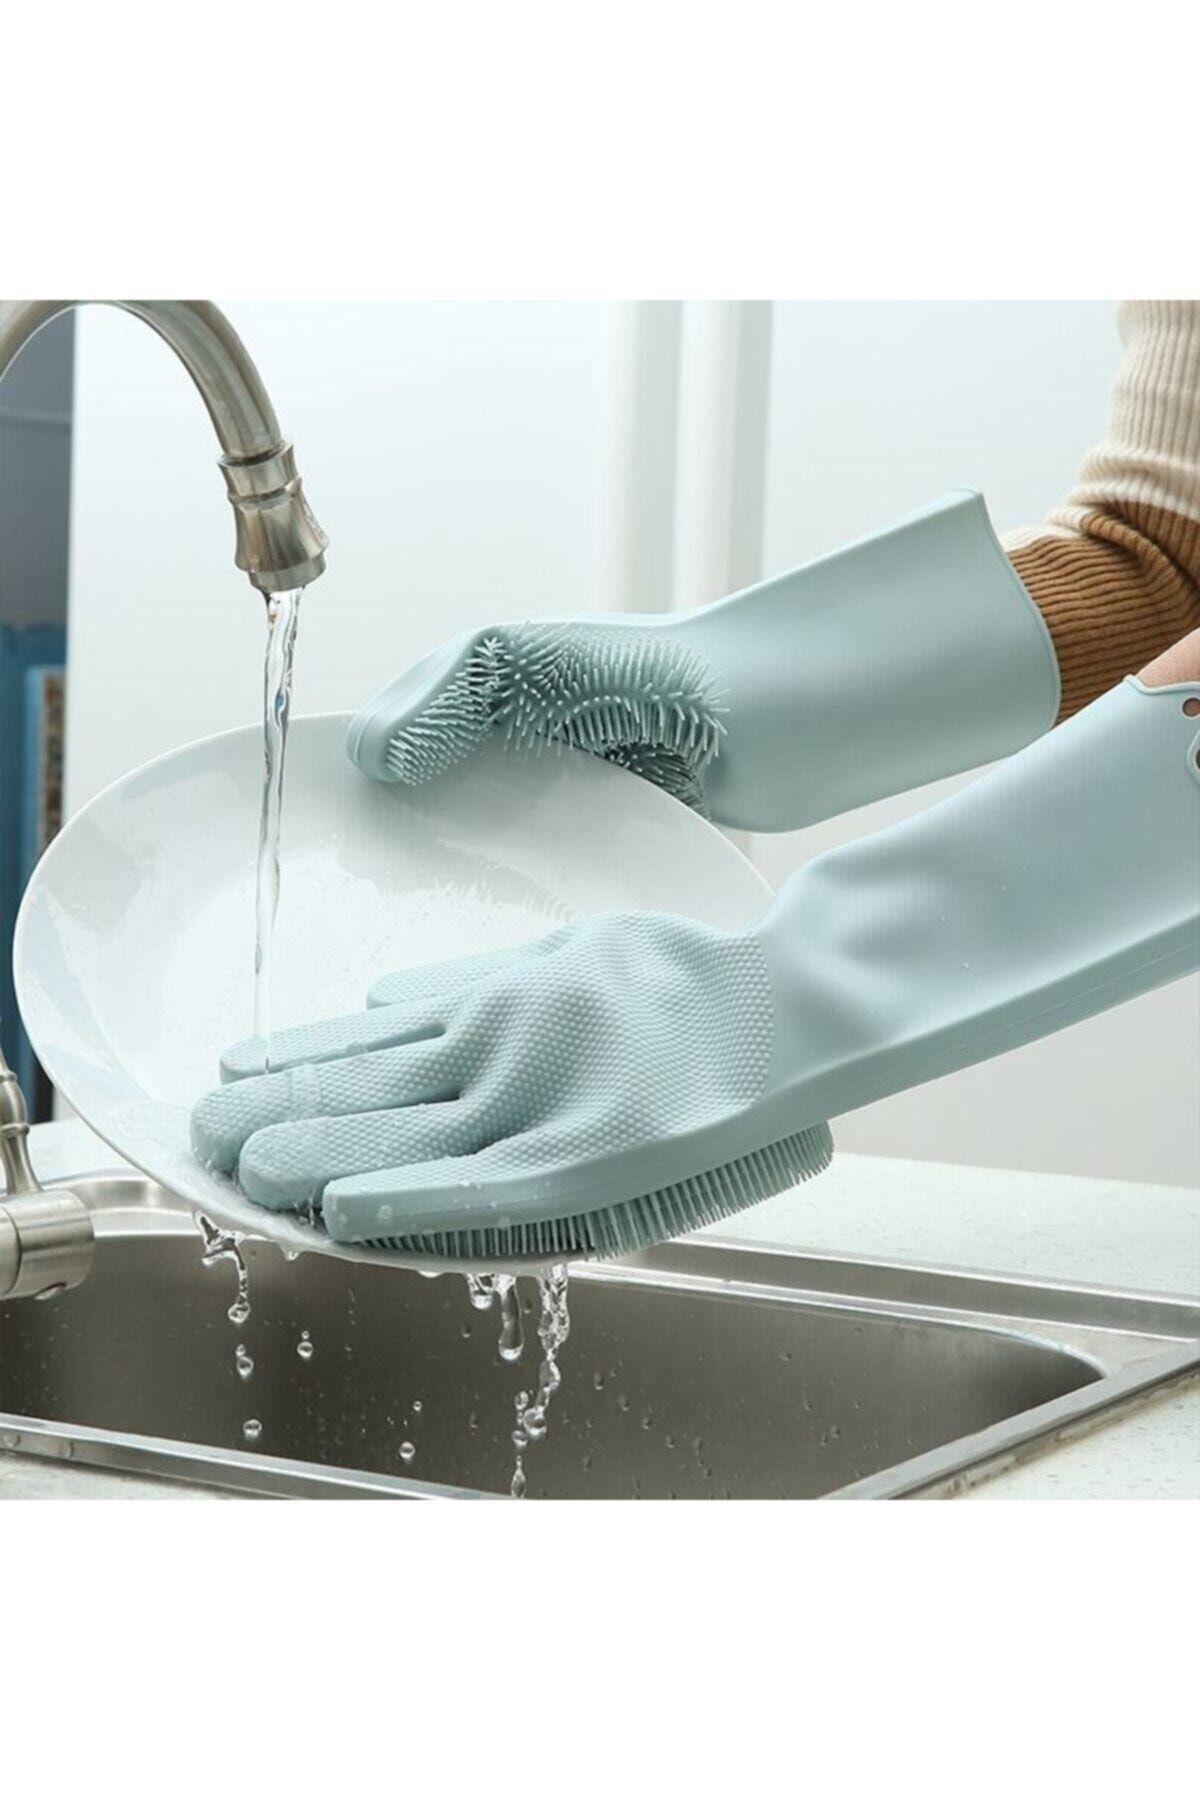 CMT Sihirli Bulaşık Eldiveni Süngeri Mutfak Banyo Temizlik Oto Yıkama Fırçası